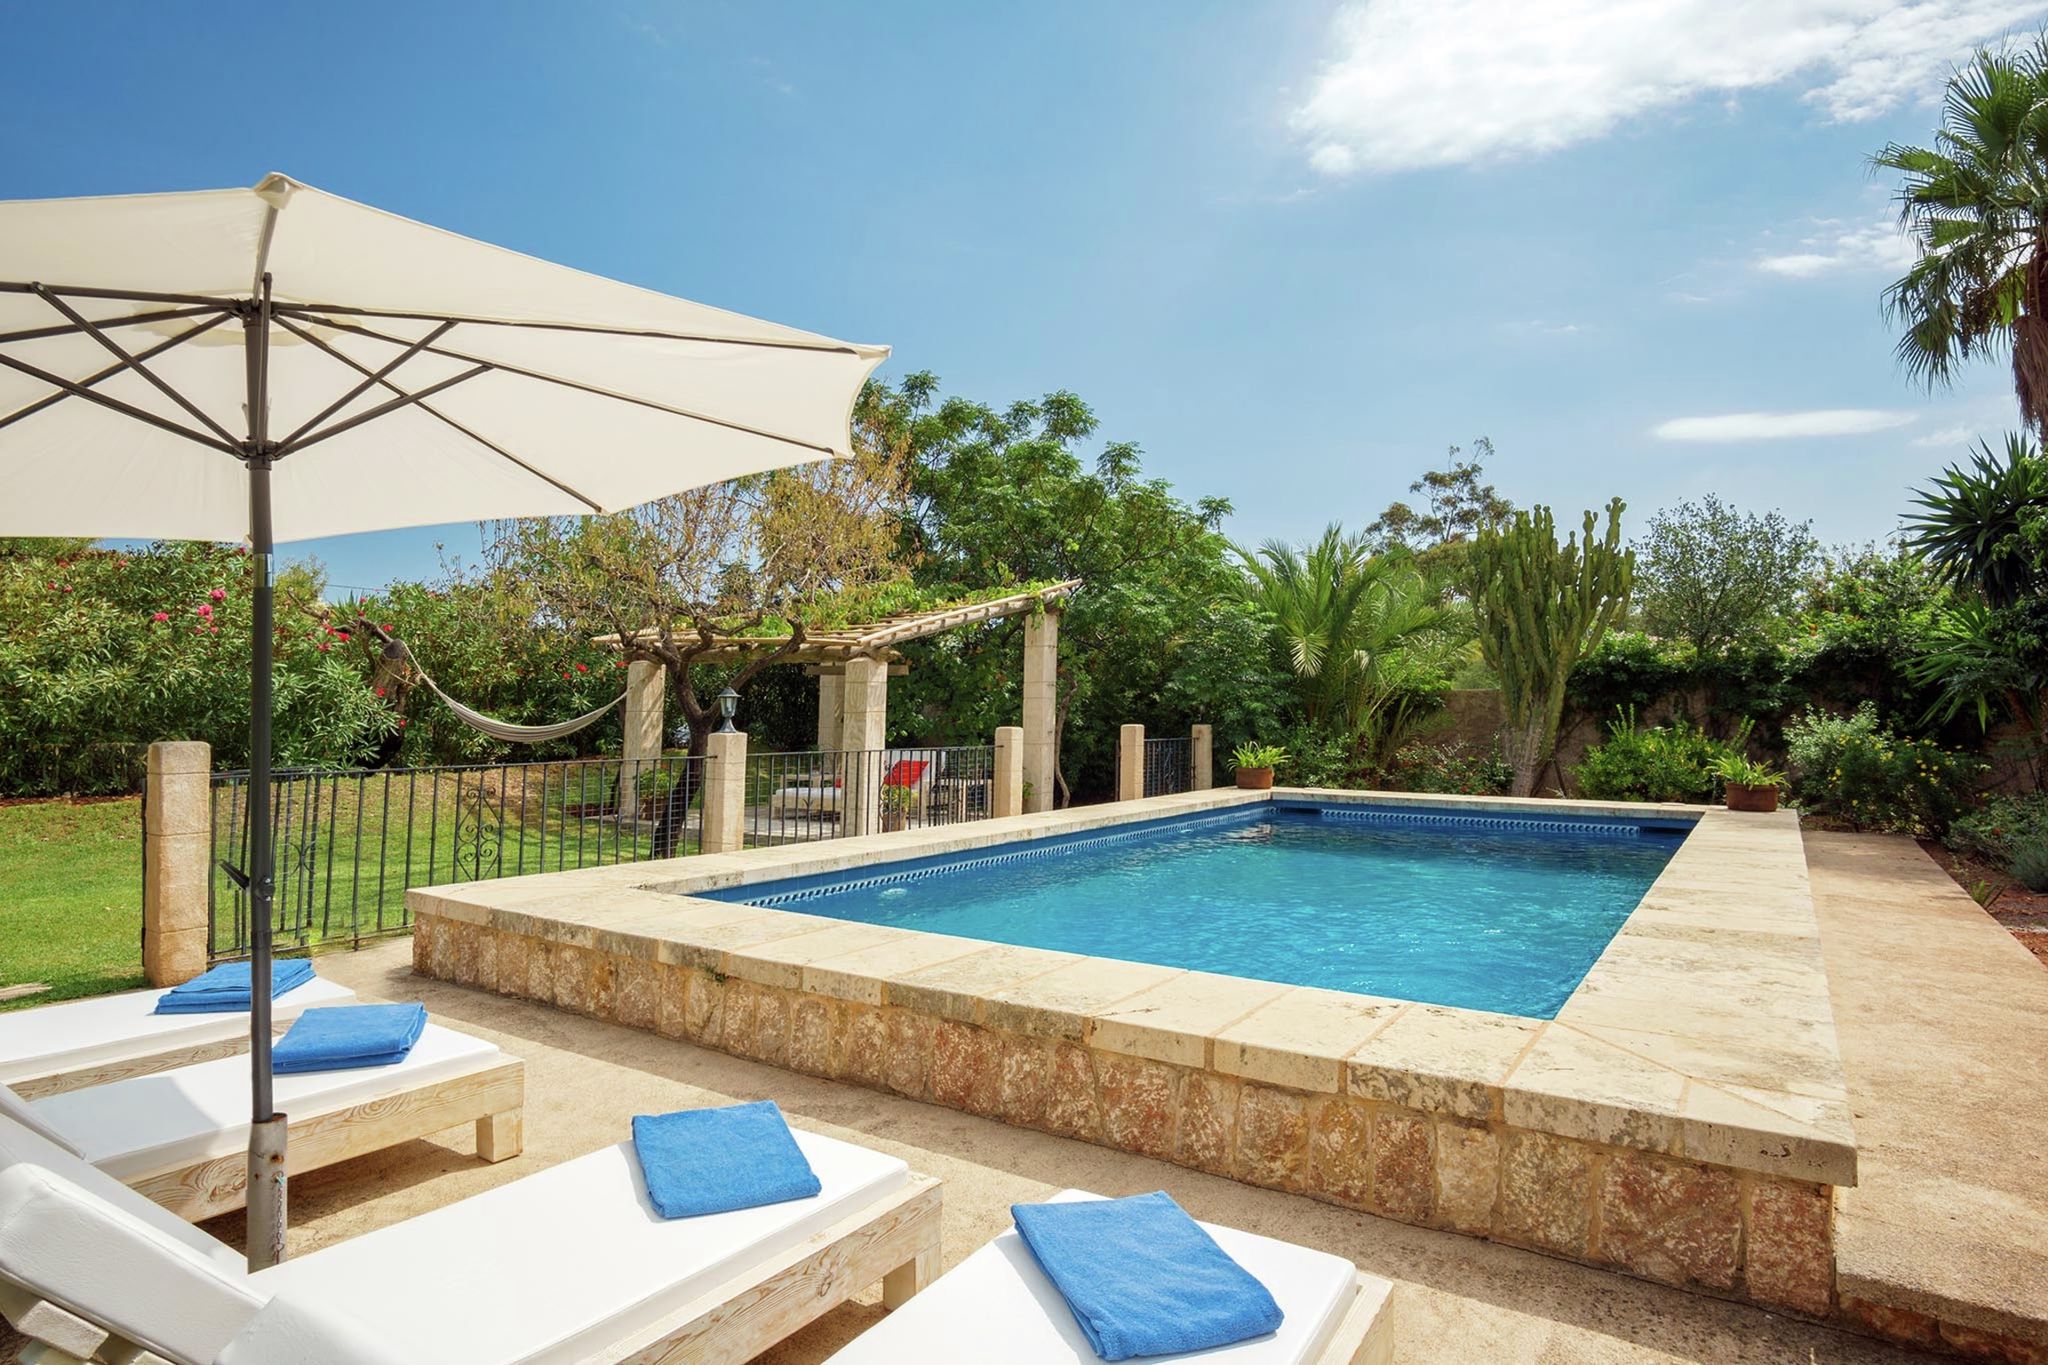 Mooi landhuis rustig landelijk gelegen vlakbij Pollença met privézwembad